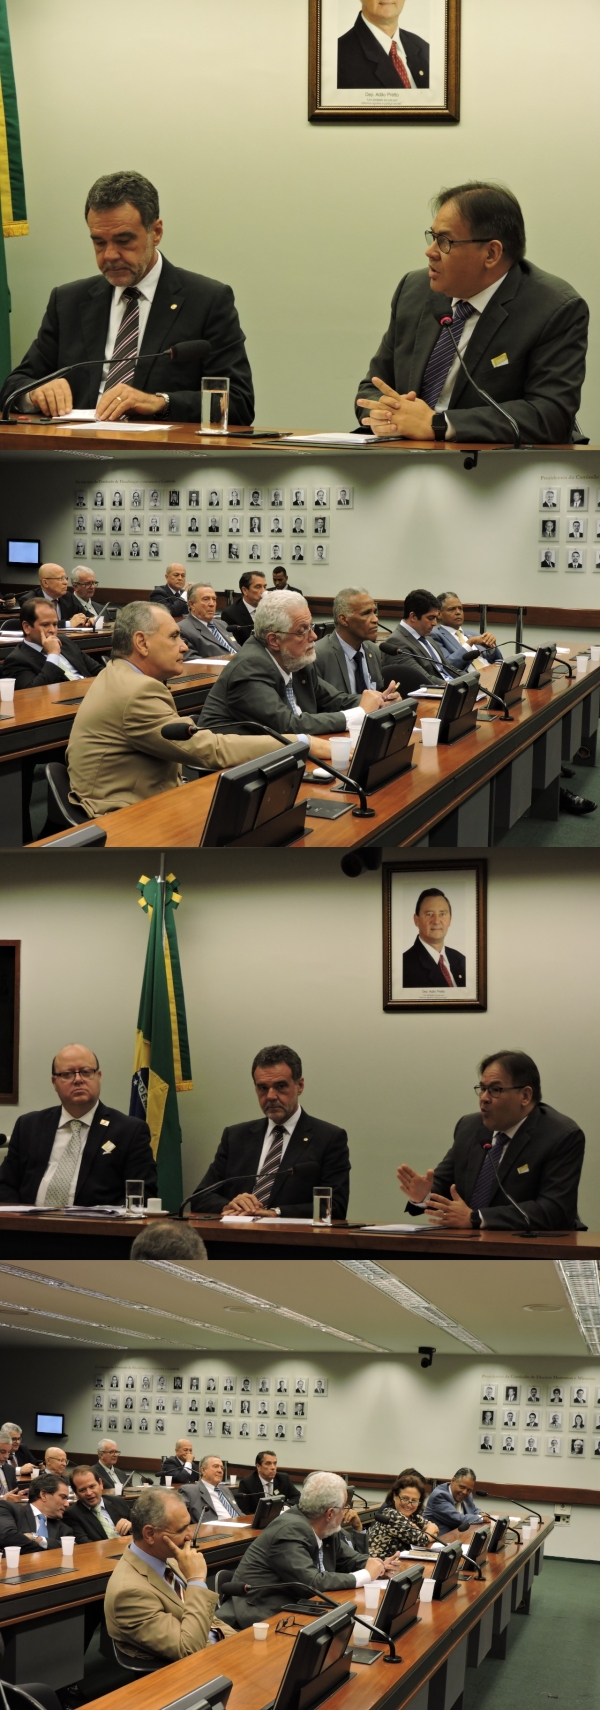 O encontro tem como objetivo aproximar os parlamentares da realidade do setor da saúde em seus estados - CNSaúde inaugura seu projeto "Saúde no Congresso" com representantes da Bahia